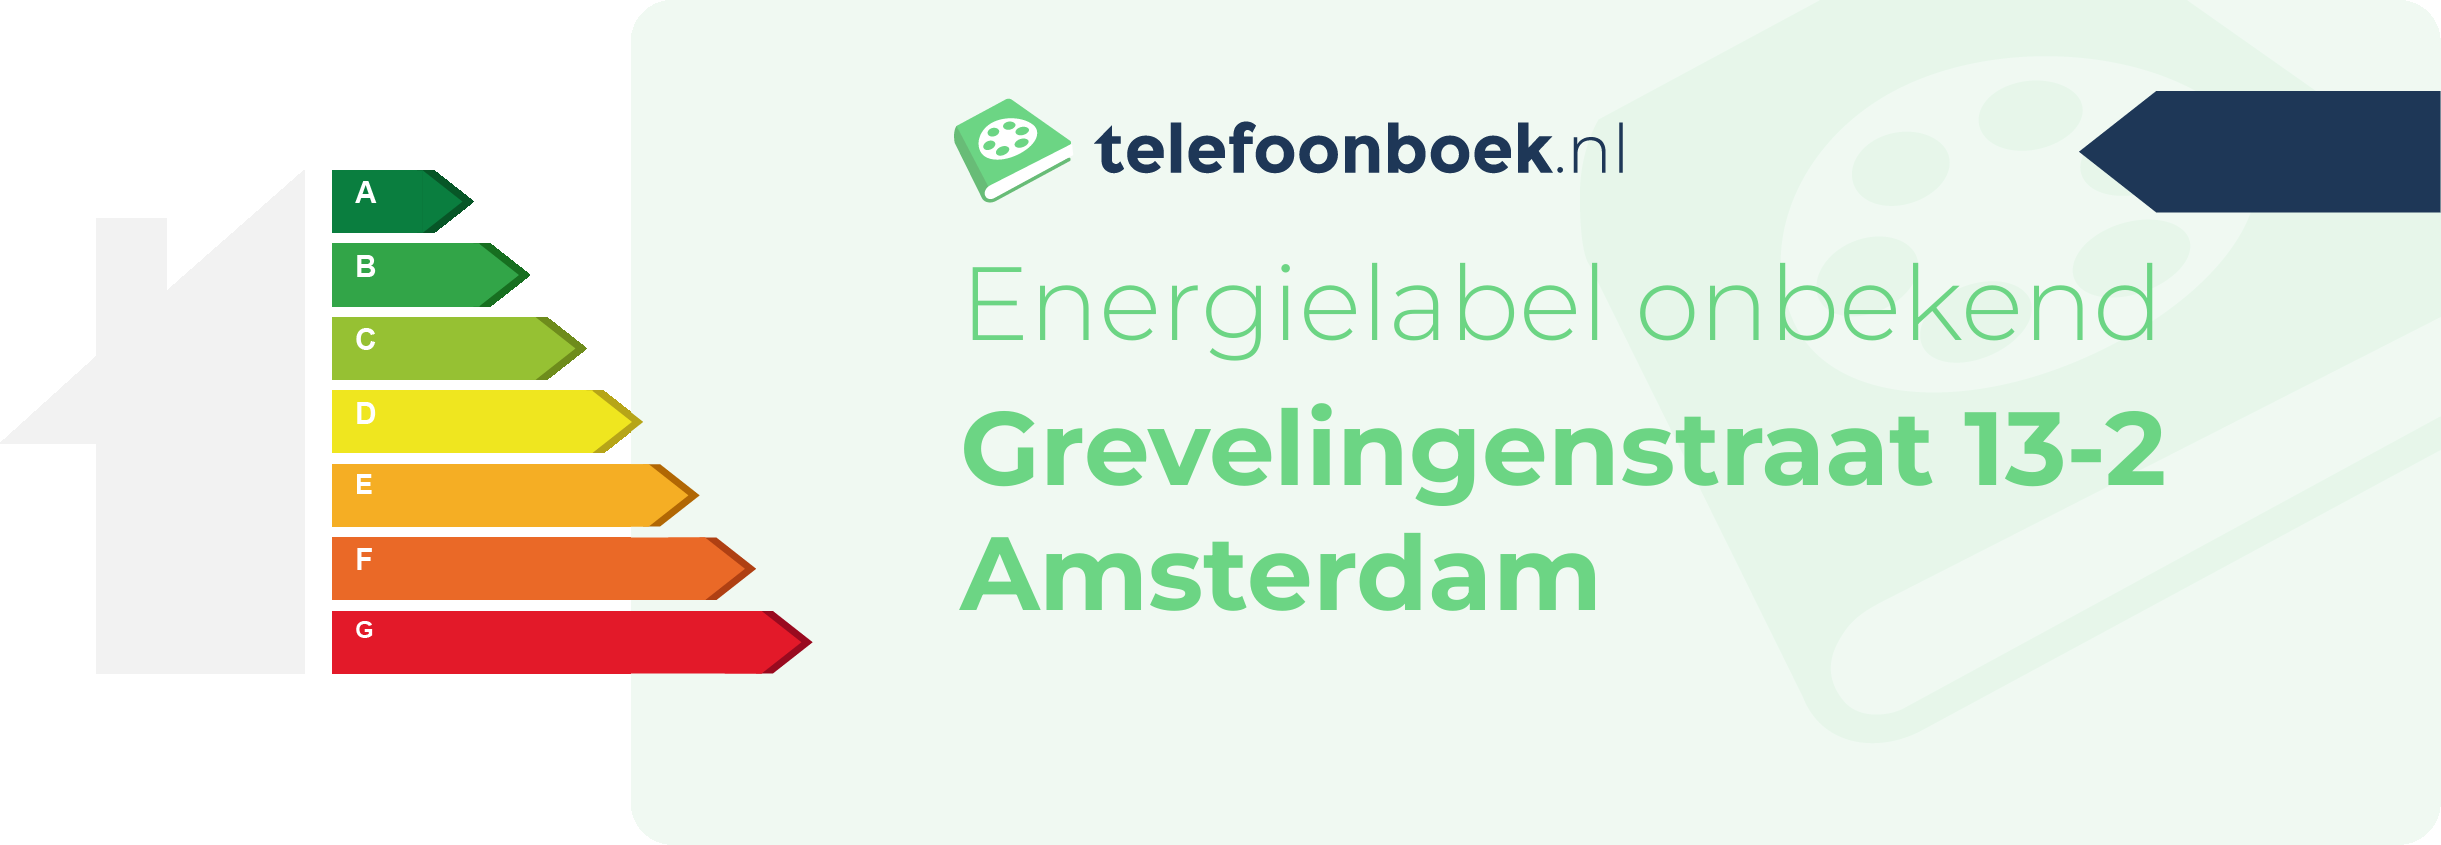 Energielabel Grevelingenstraat 13-2 Amsterdam